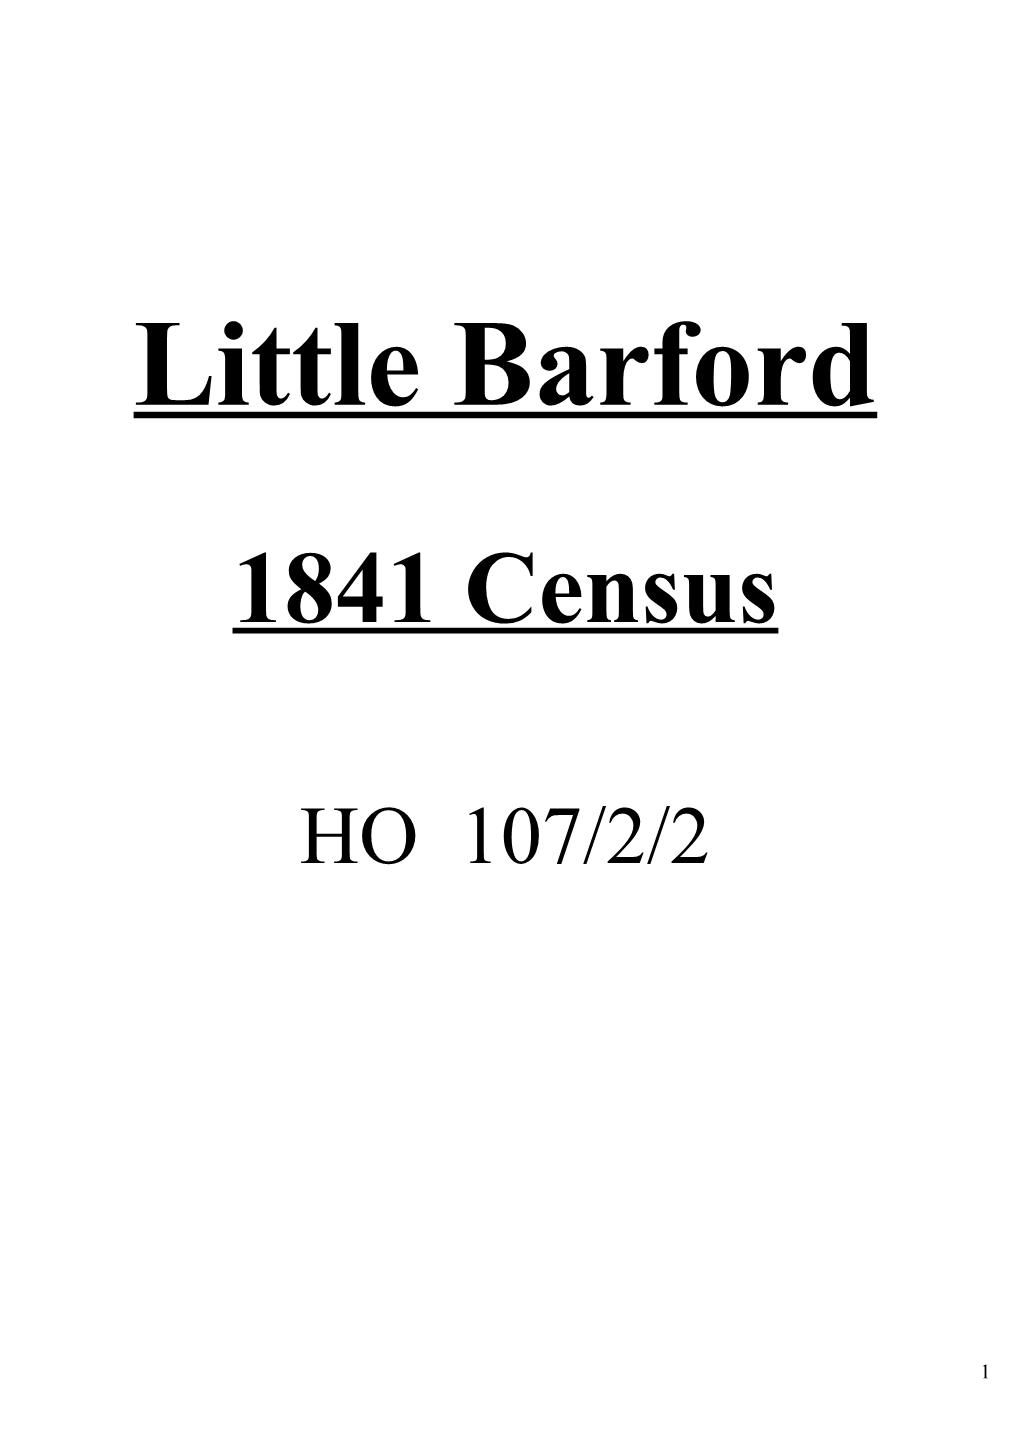 Little Barford s1